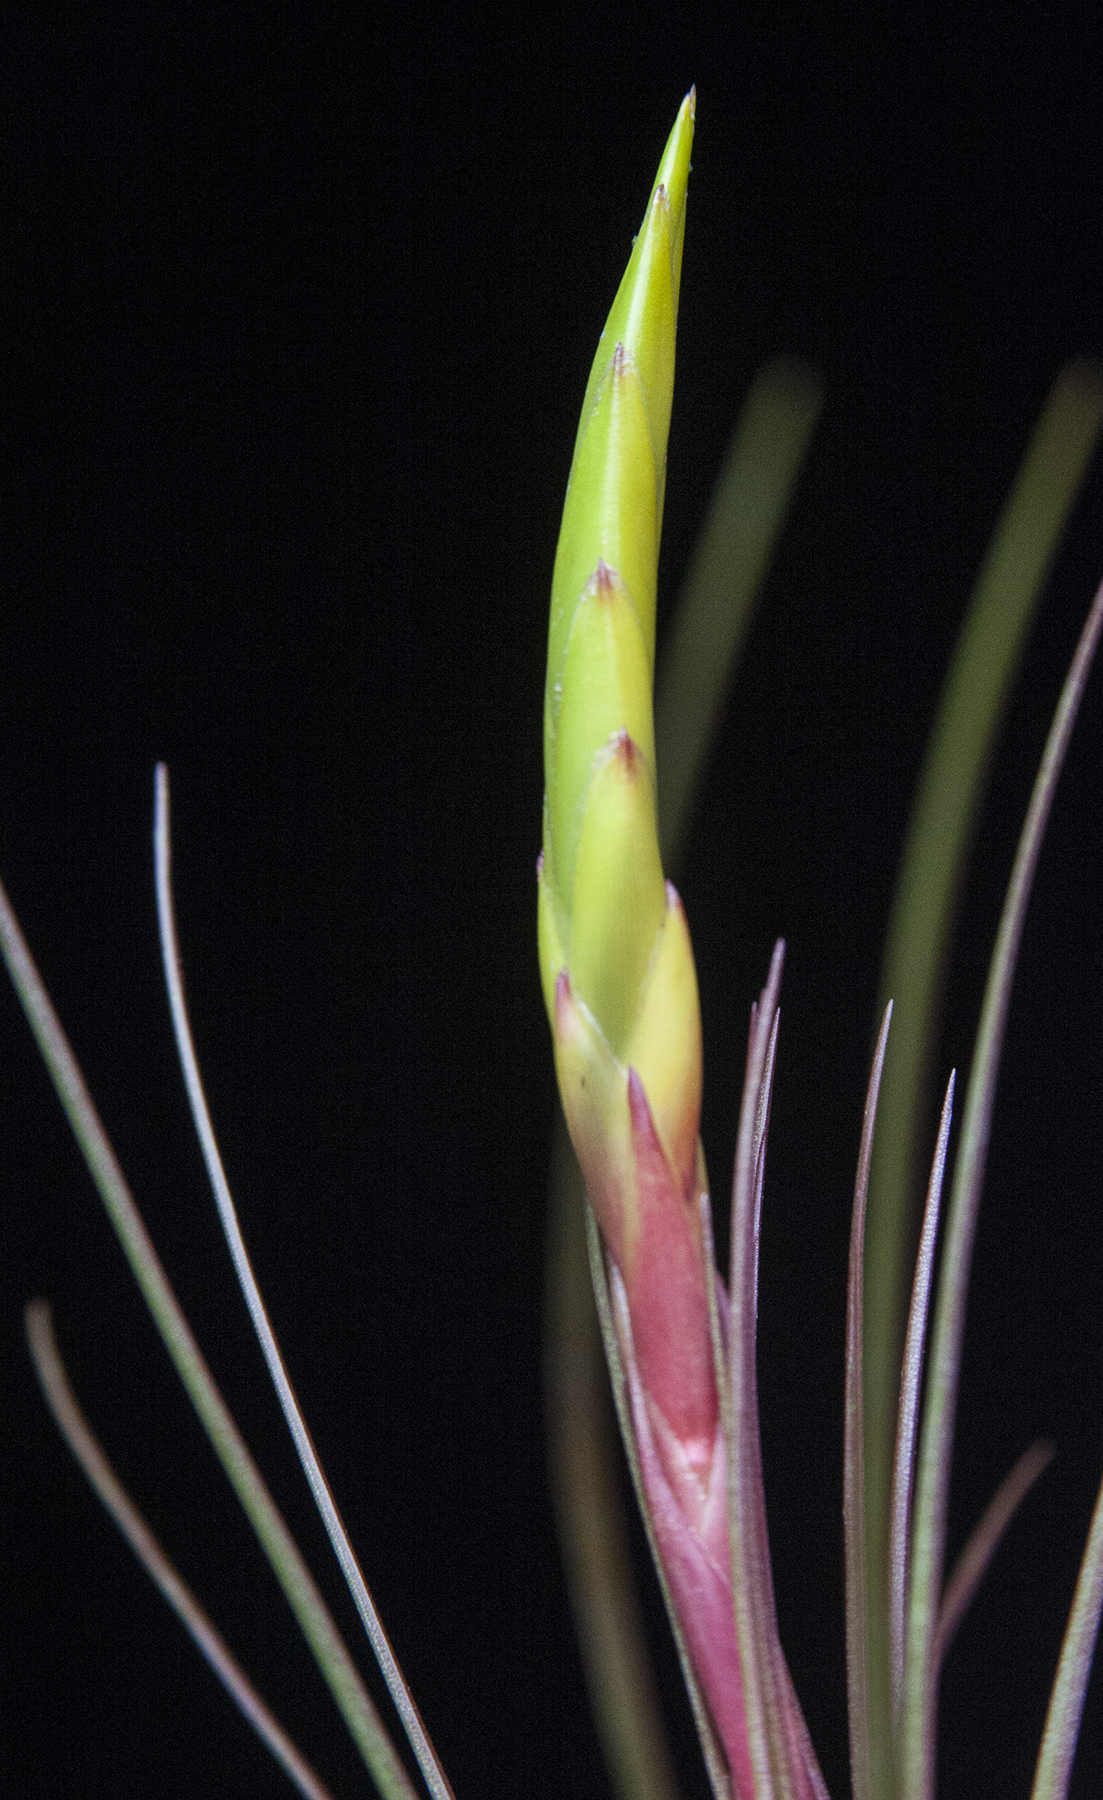 Tillandsia tricolor giant form flower spike